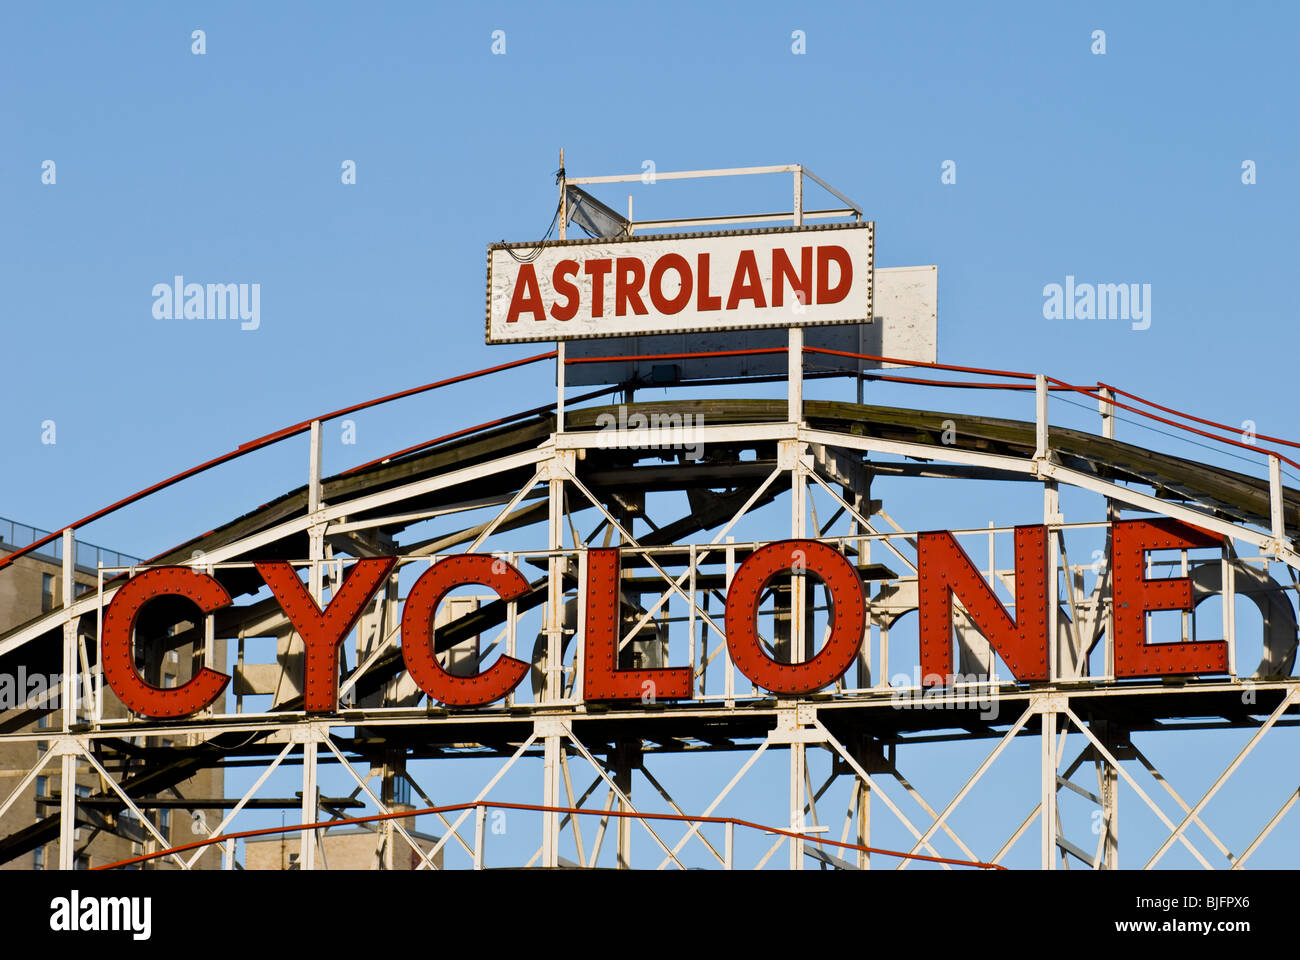 El ciclón Roller Coaster - Astroland en Coney Island, en Nueva York, septiembre de 2009 Foto de stock